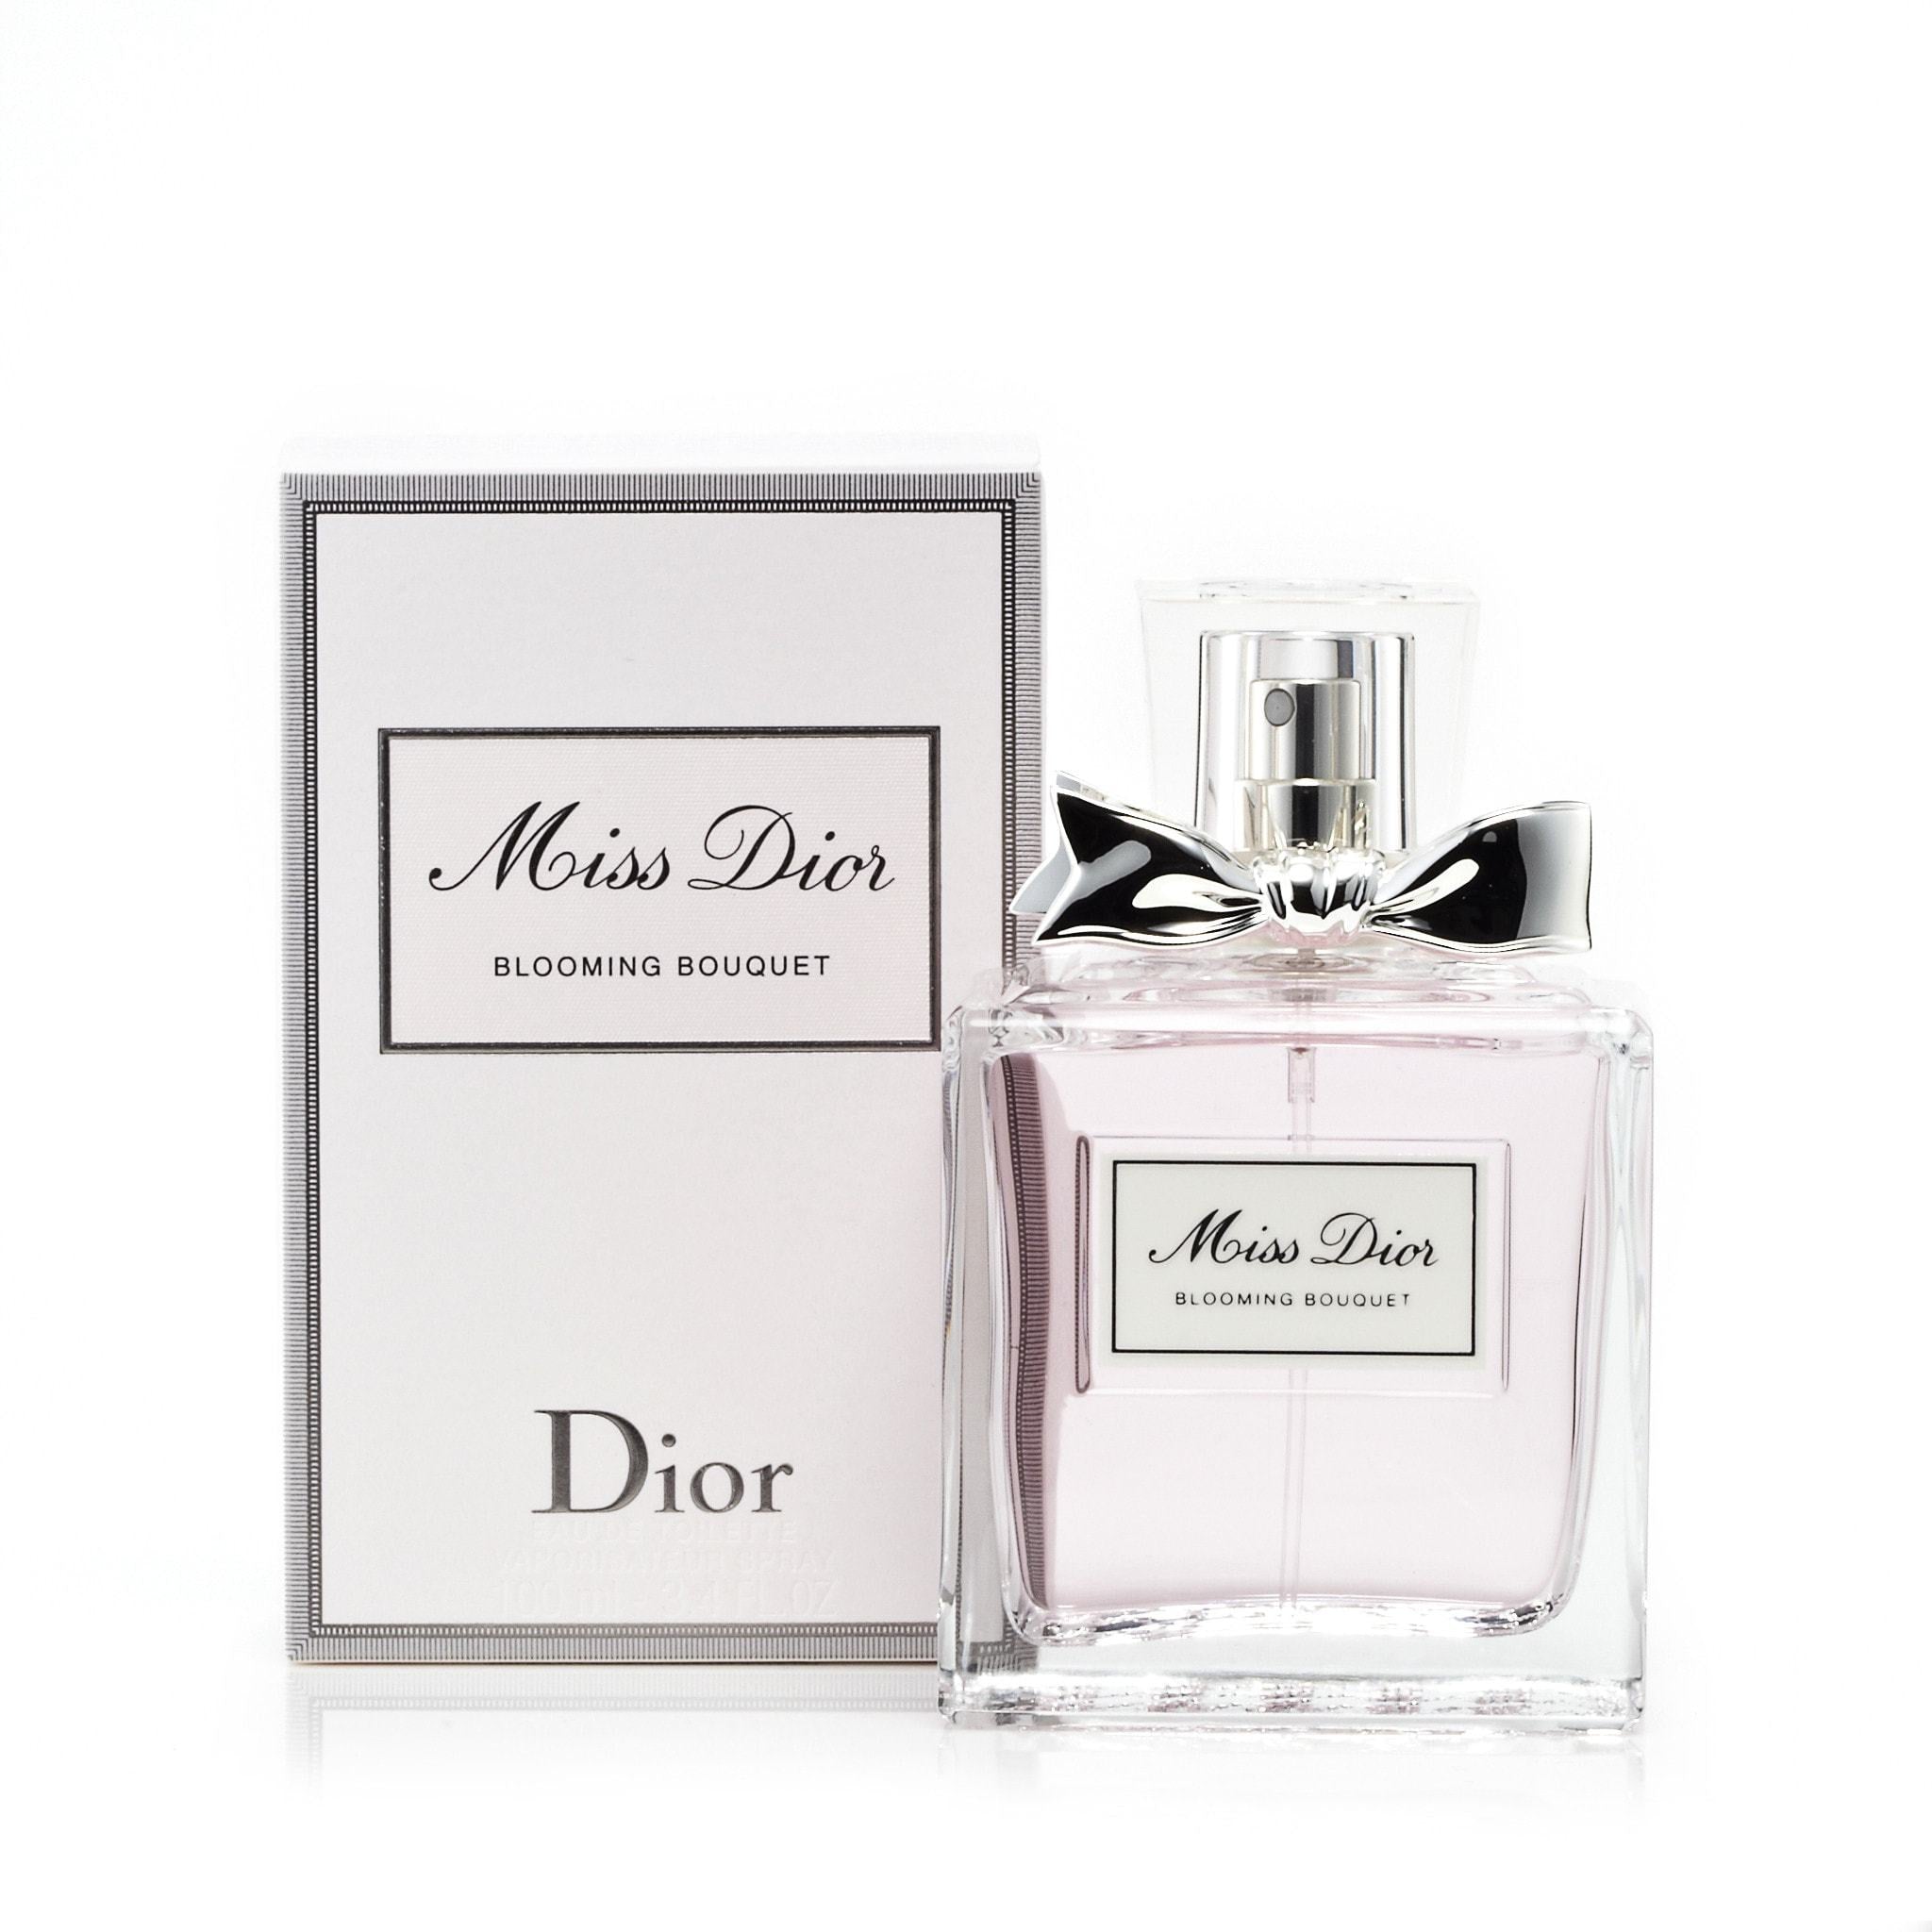 Miss Dior originale by Christian Dior EDT Spray 1.7 oz Women